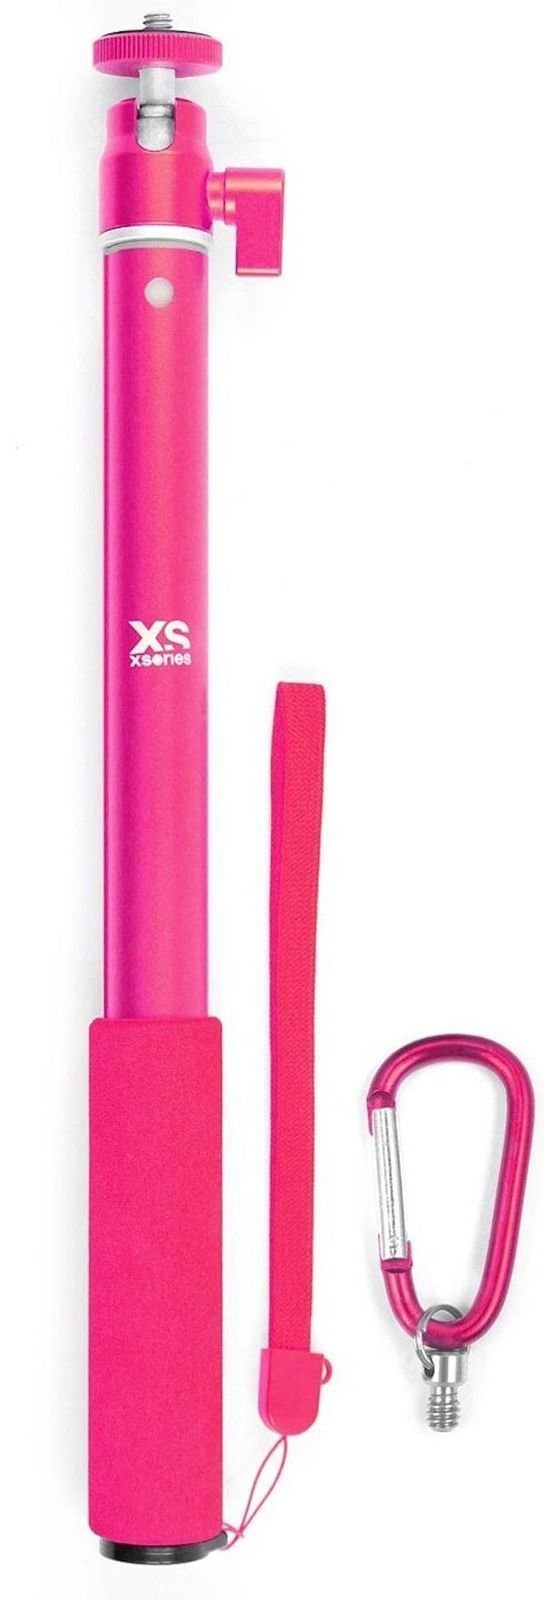 Dodatki GoPro XSories Big U-Shot Pink